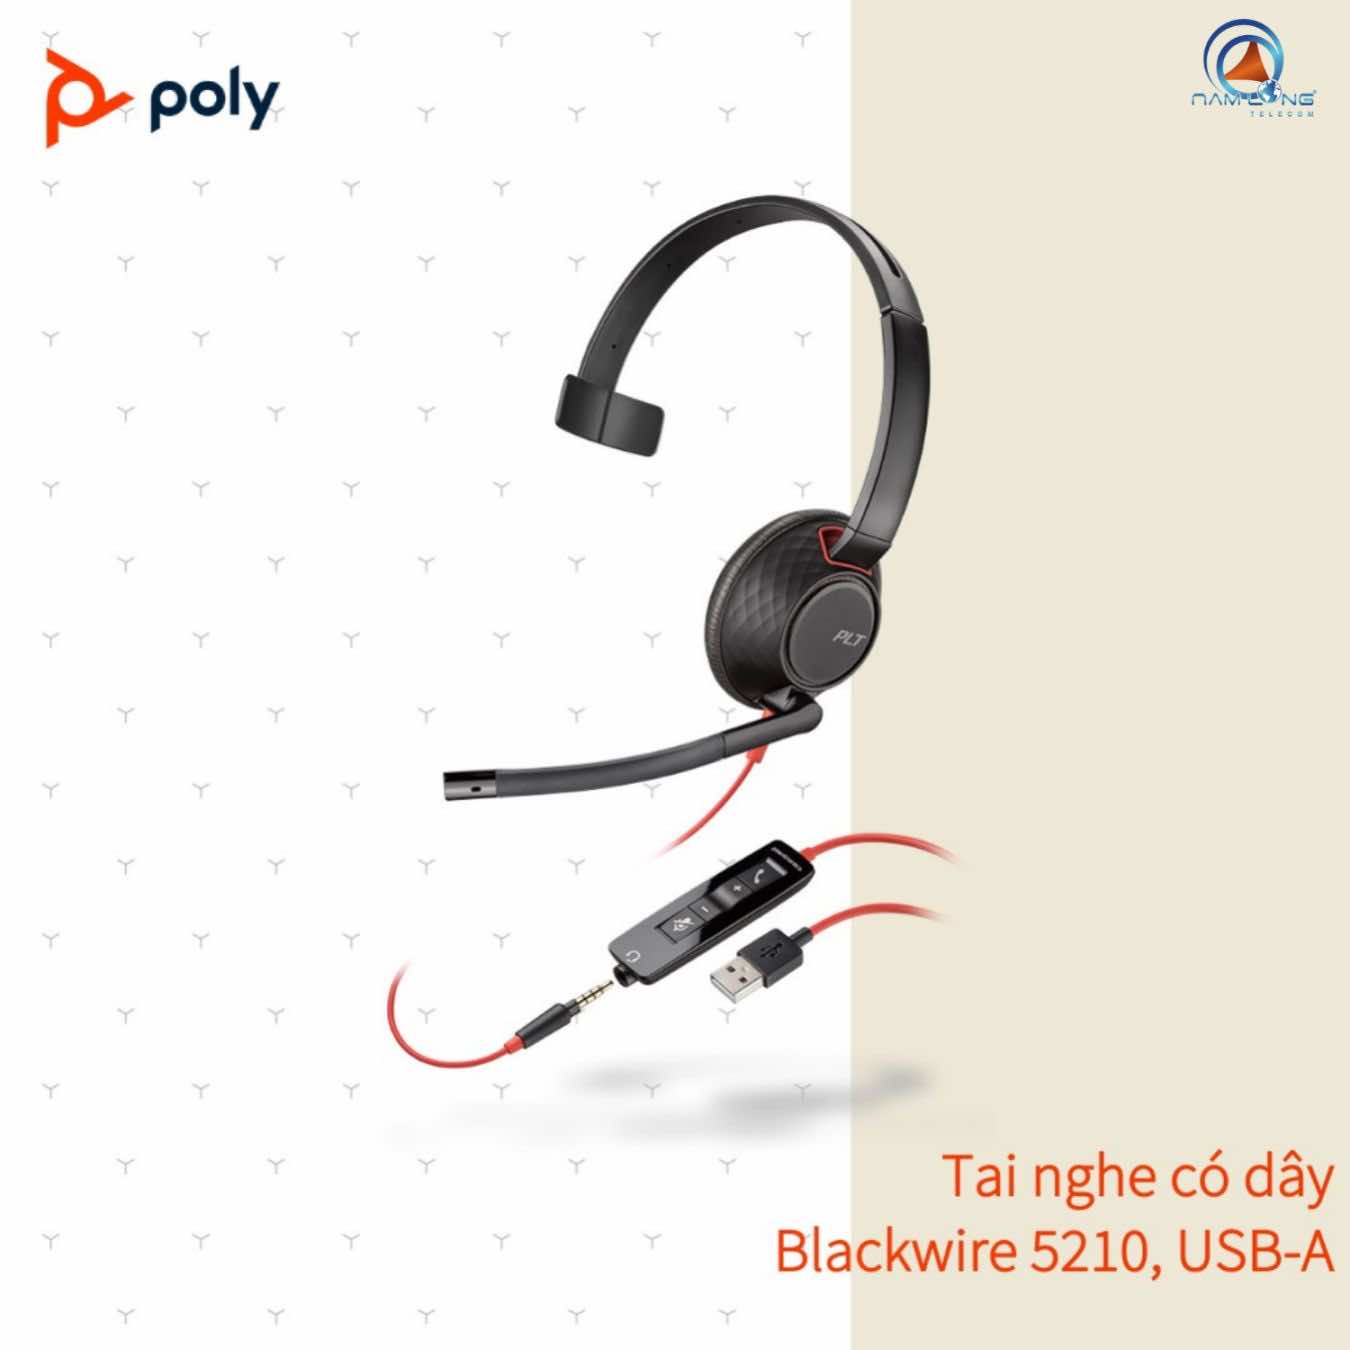 Tai nghe có dây Poly Blackwire 5210 USB Type AC